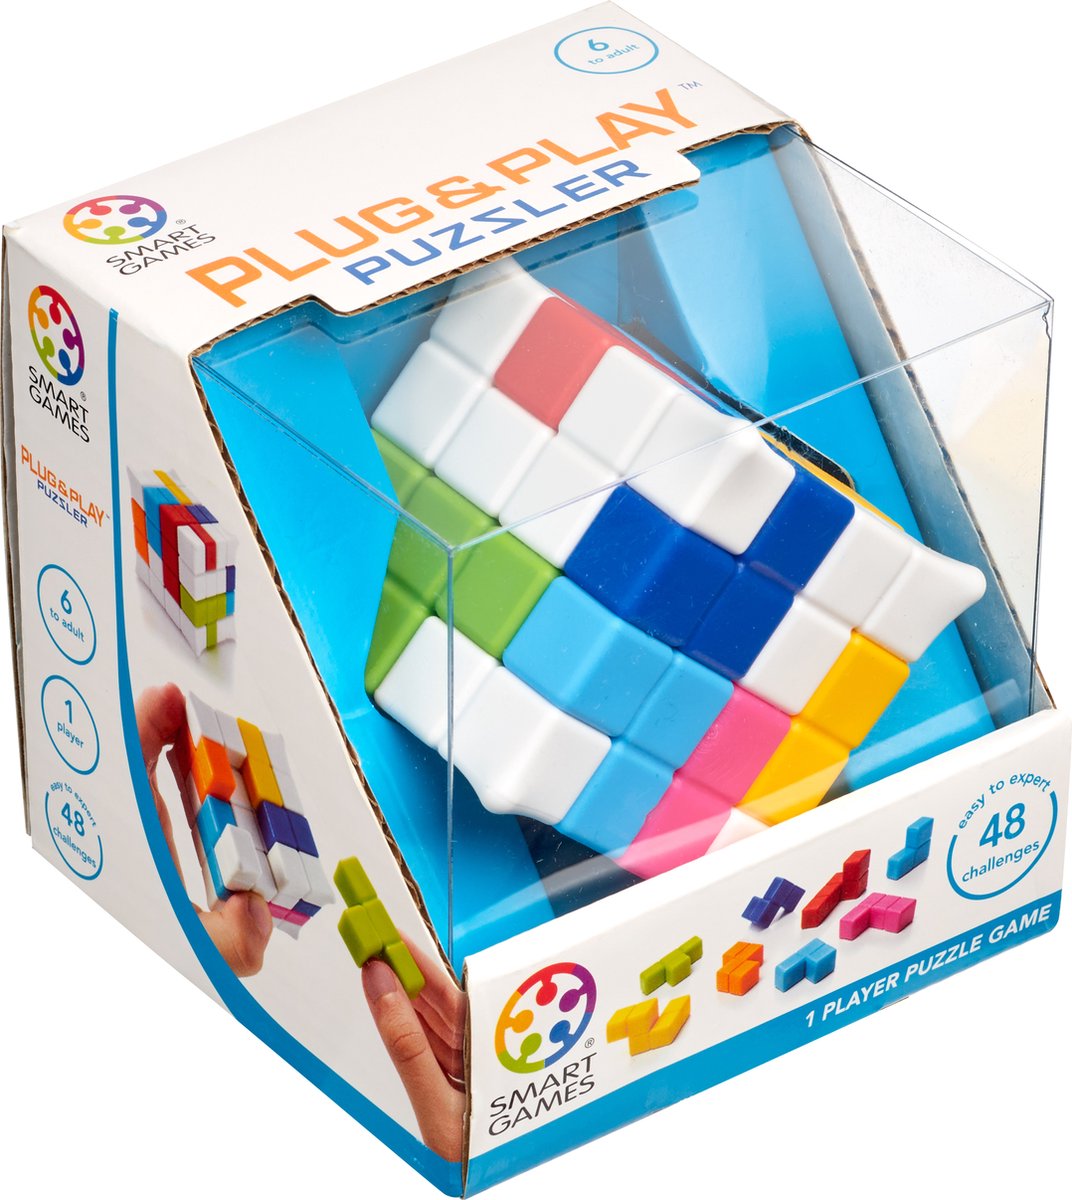 SmartGames - Plug & Play Puzzler (48 opdrachten) -  fidget toy - kubus puzzel - SmartGames